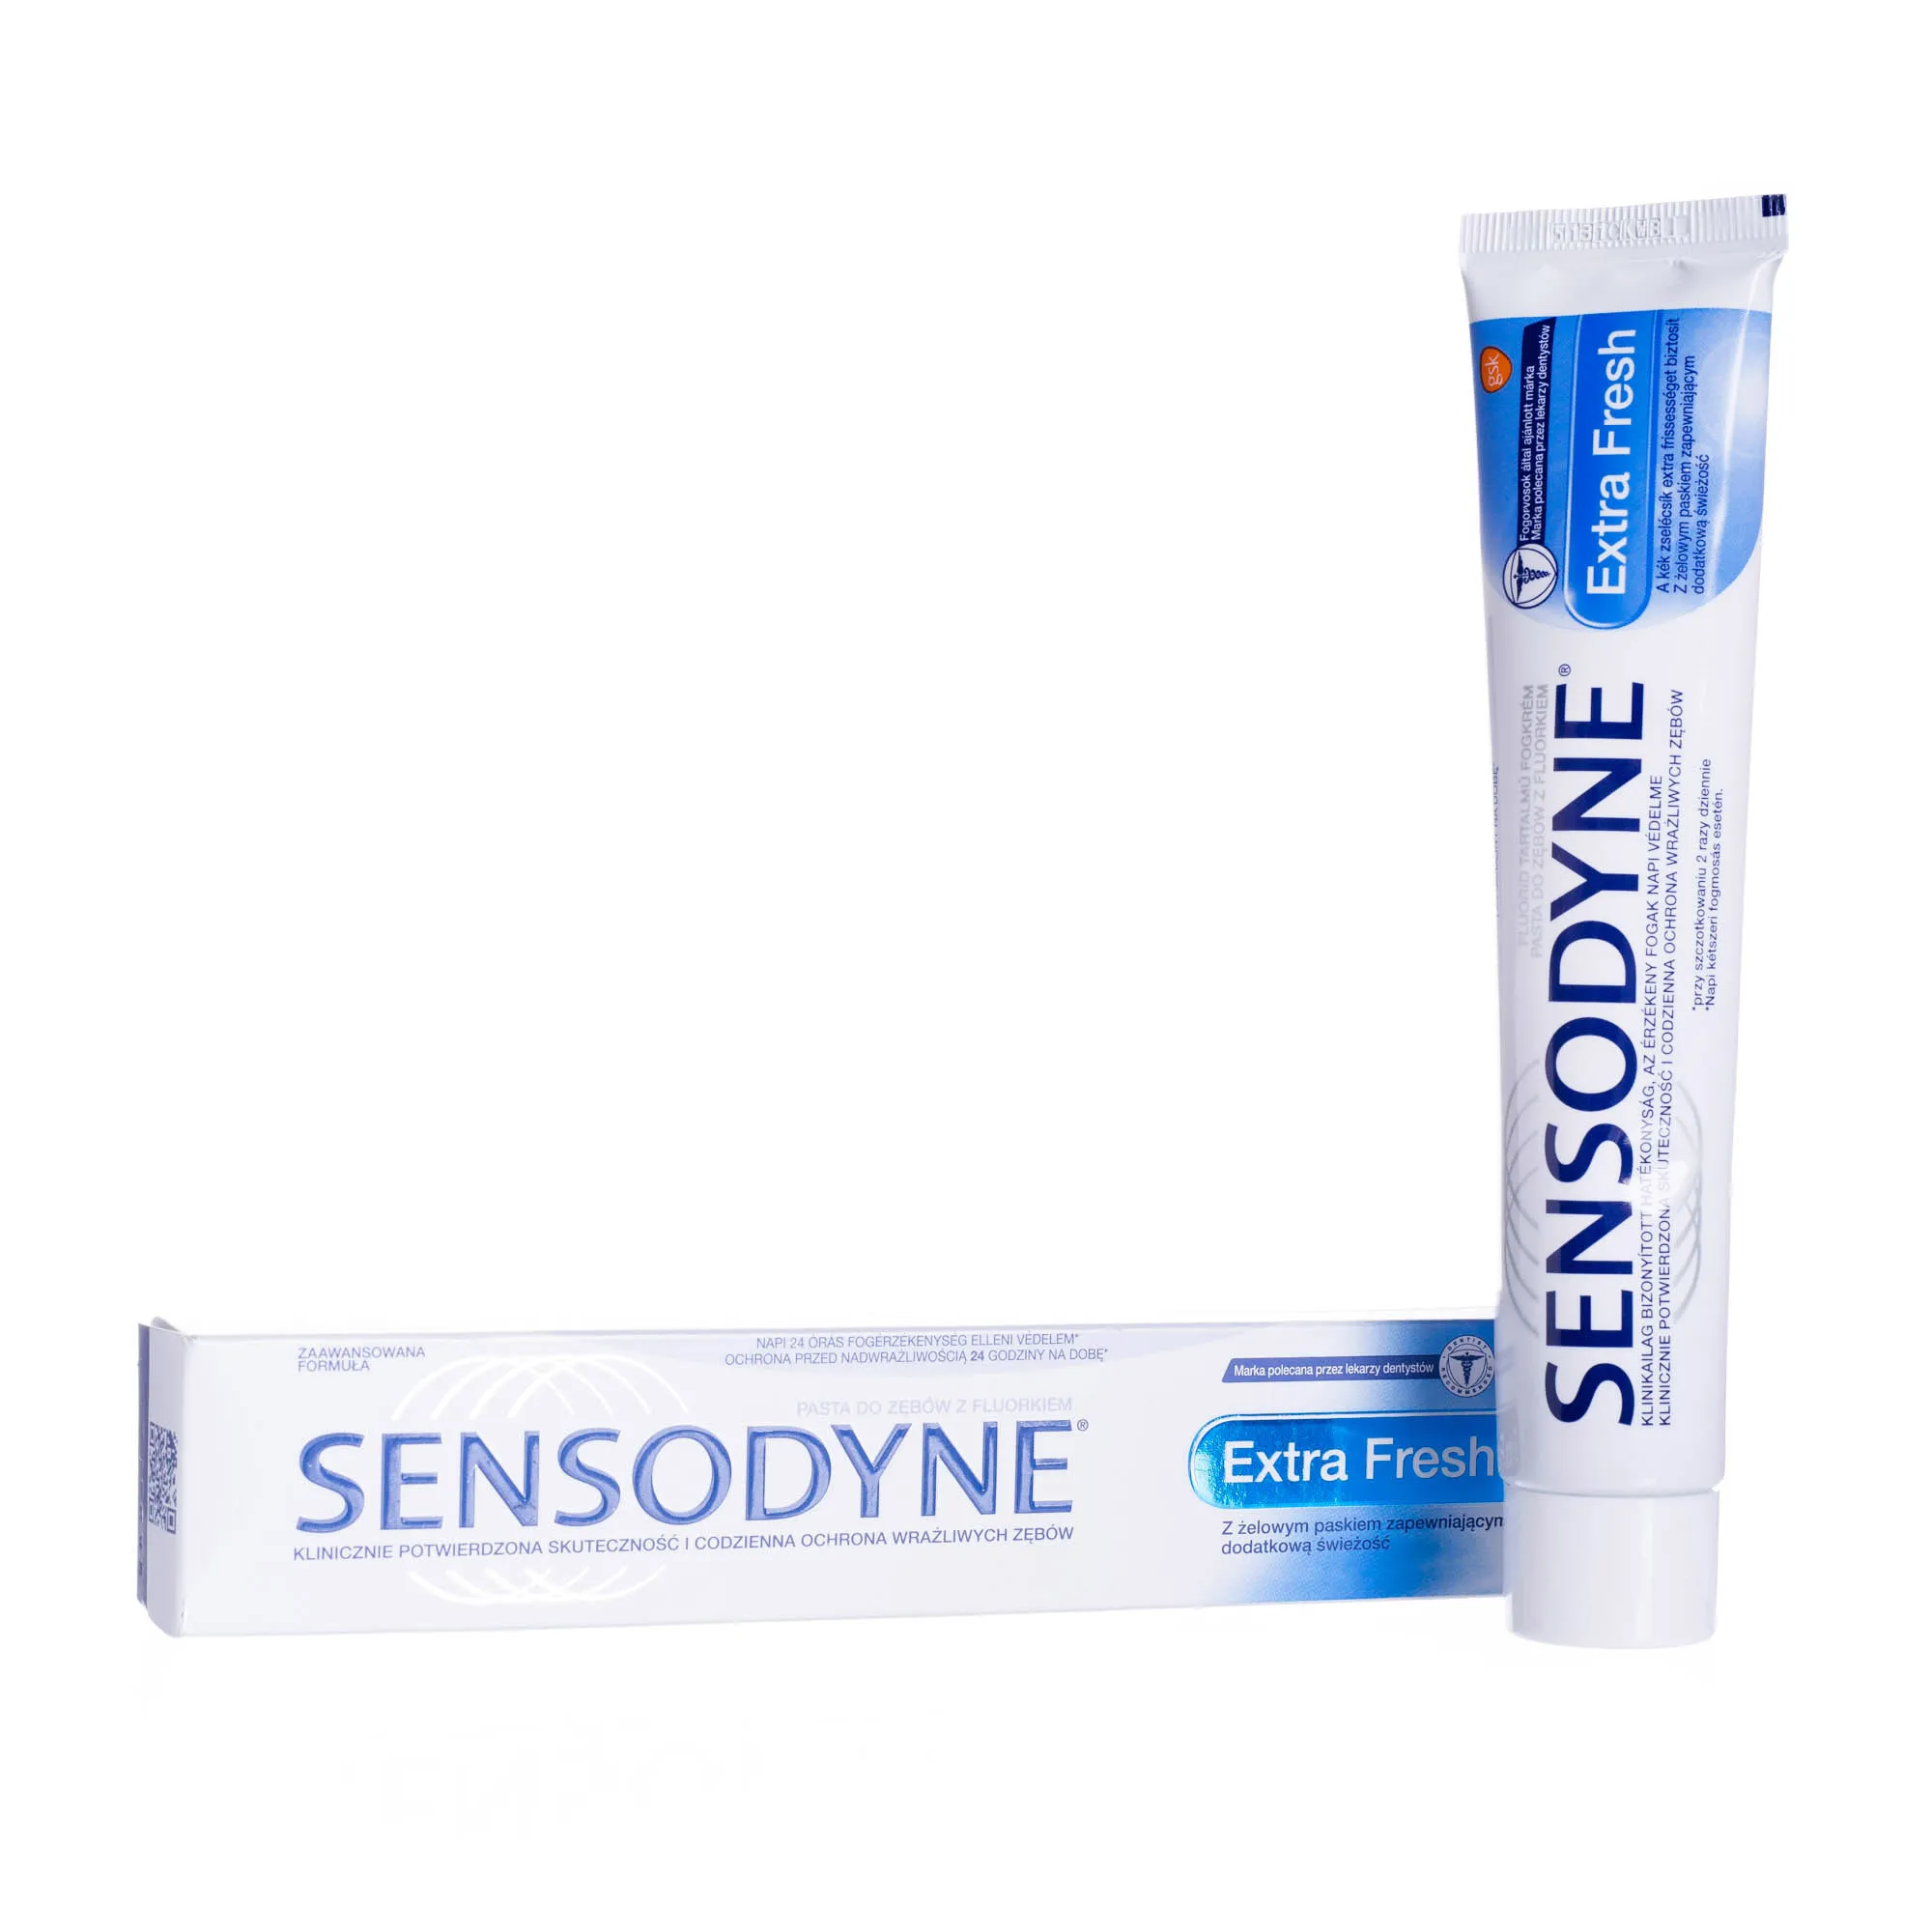 Sensodyne Extra Fresh, pasta do zębów z fluorkiem, 75 ml 